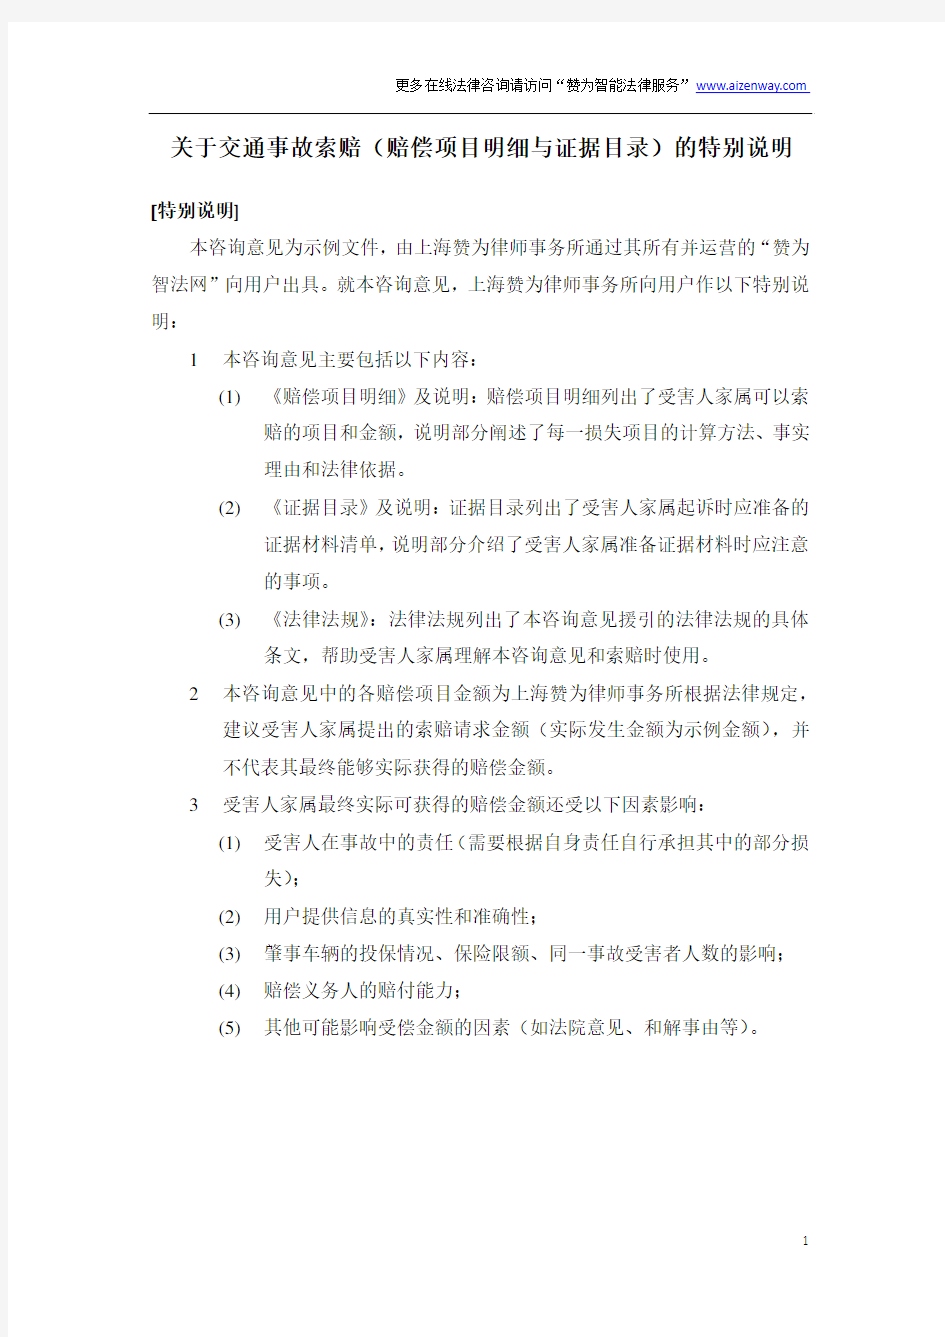 2015年北京市交通事故赔偿项目明细(外来务工人员死亡示例)+证据目录+法律分析